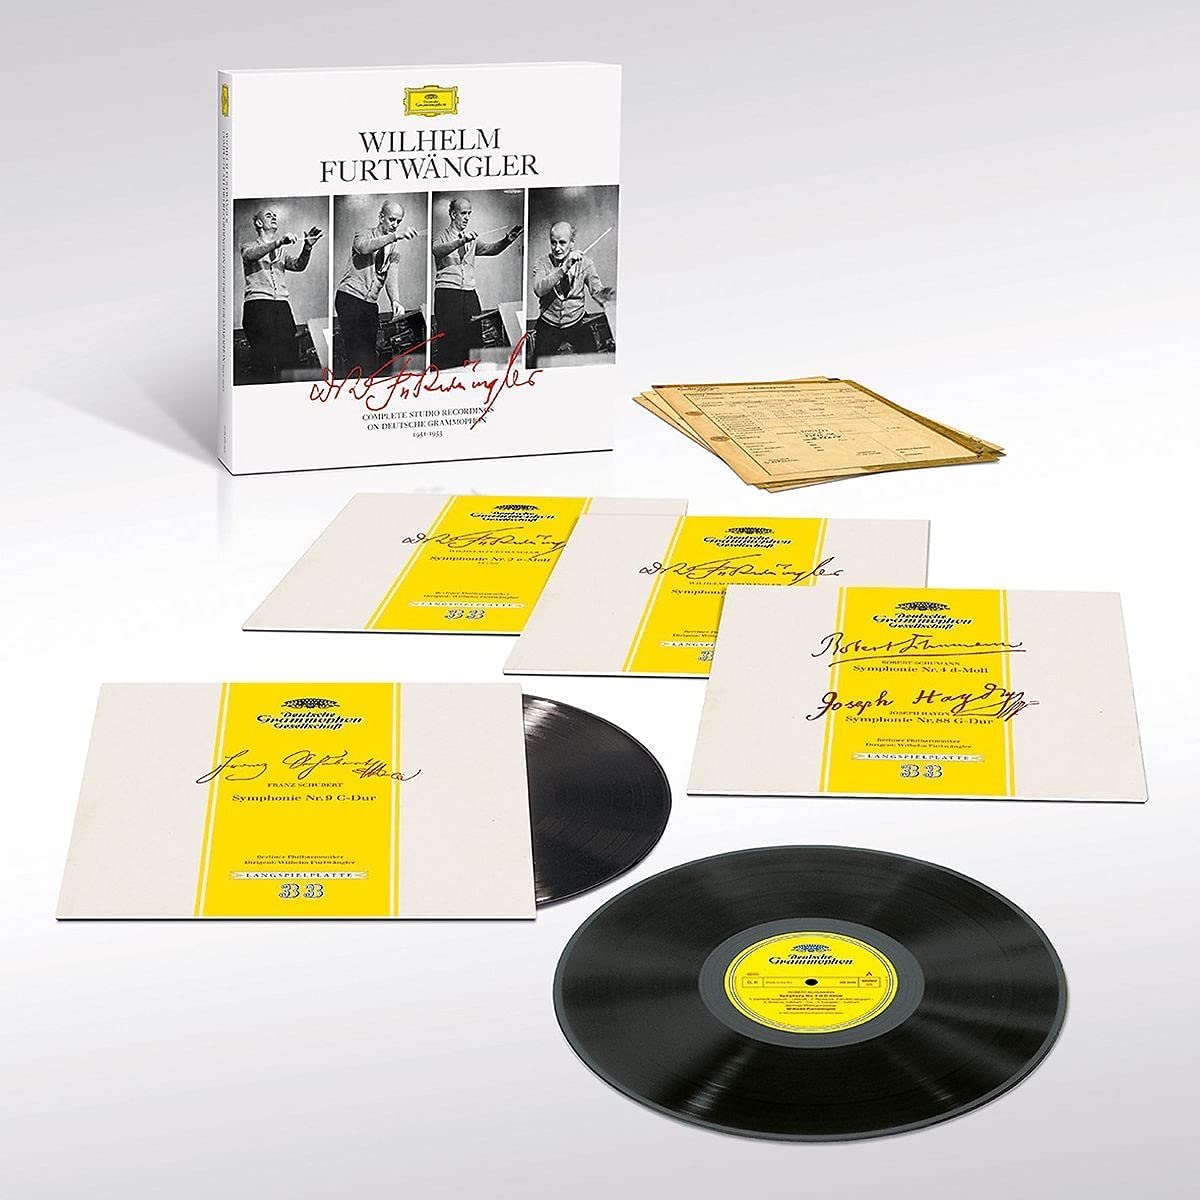 Wilhelm Furtwangler: Complete Studio Recordings on Deutsche Grammophon 1951-1953 - Vinyl | Wilhelm Furtwangler